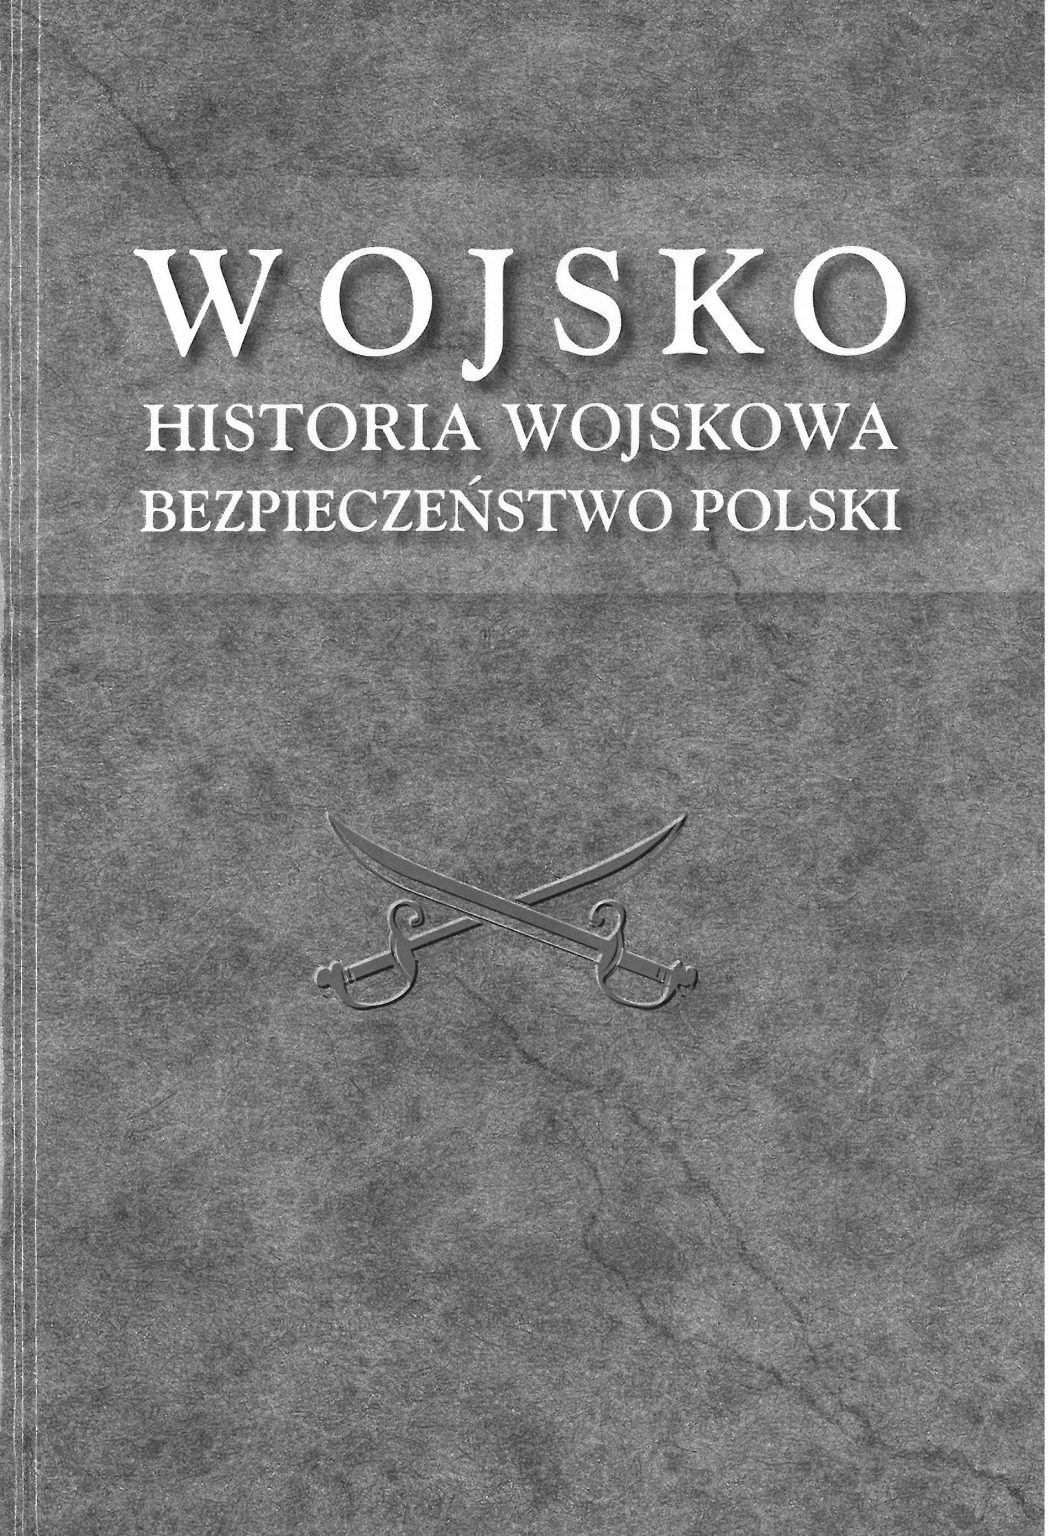 Wojsko Historia wojskowa Zbiór studiów ofiarowanych prof. T.Paneckiemu (opr.zbiorowe)